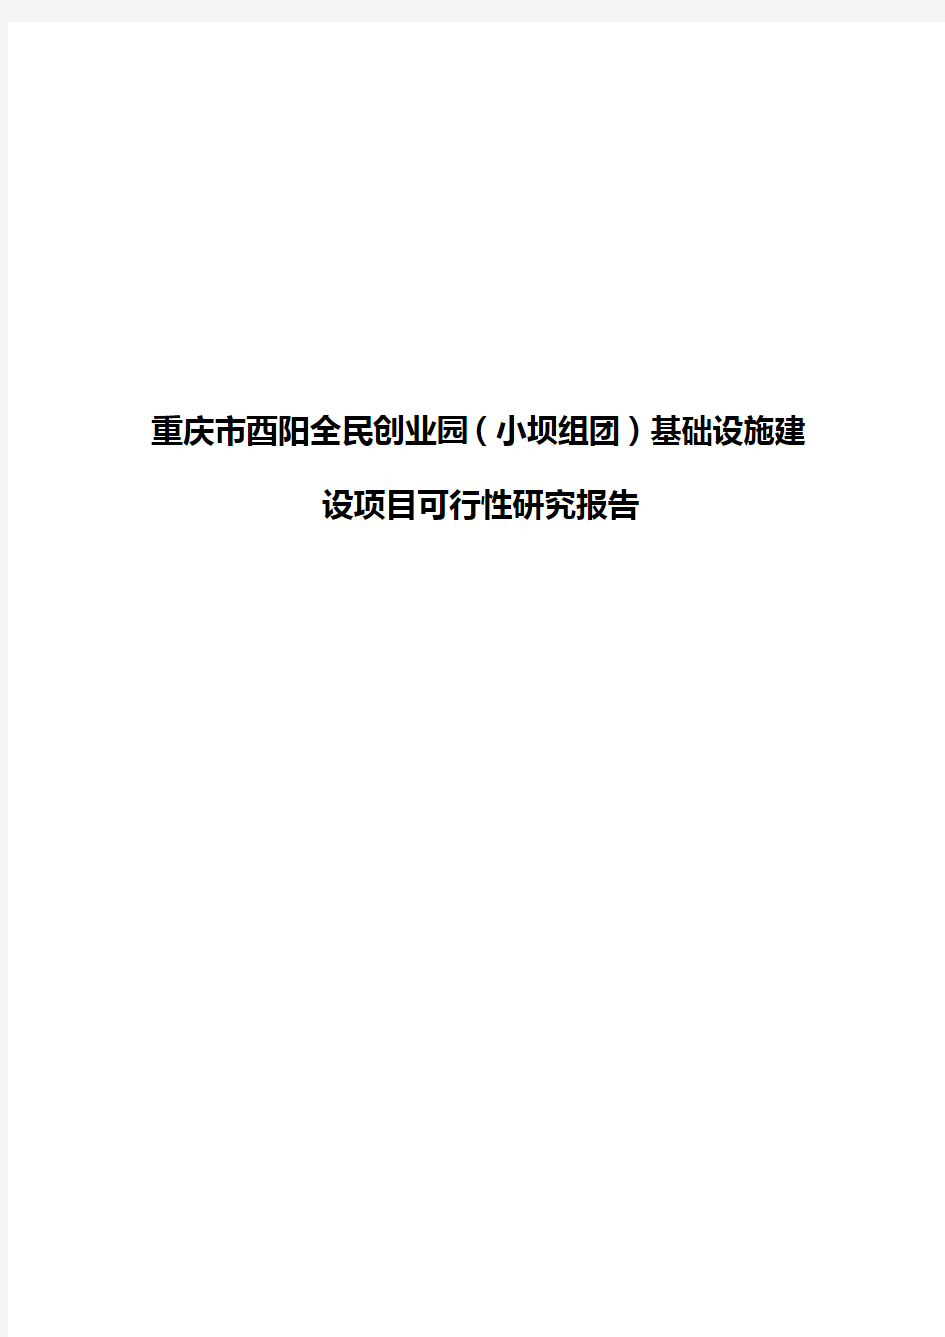 【新选申报版】重庆市酉阳全民创业园(小坝组团)基础设施建设项目可行性研究报告